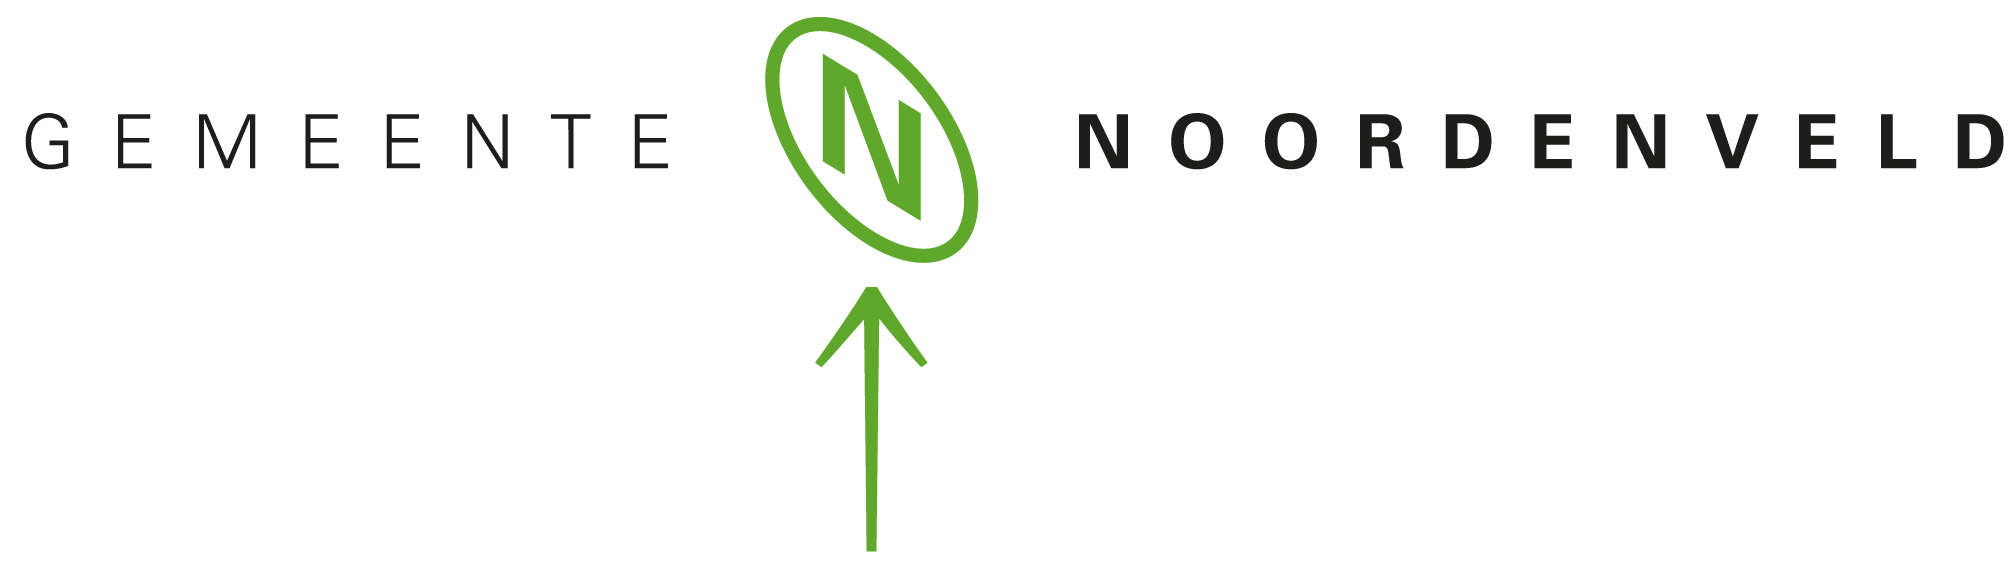 Logo-Gemeente-Noordenveld-2349338143.png